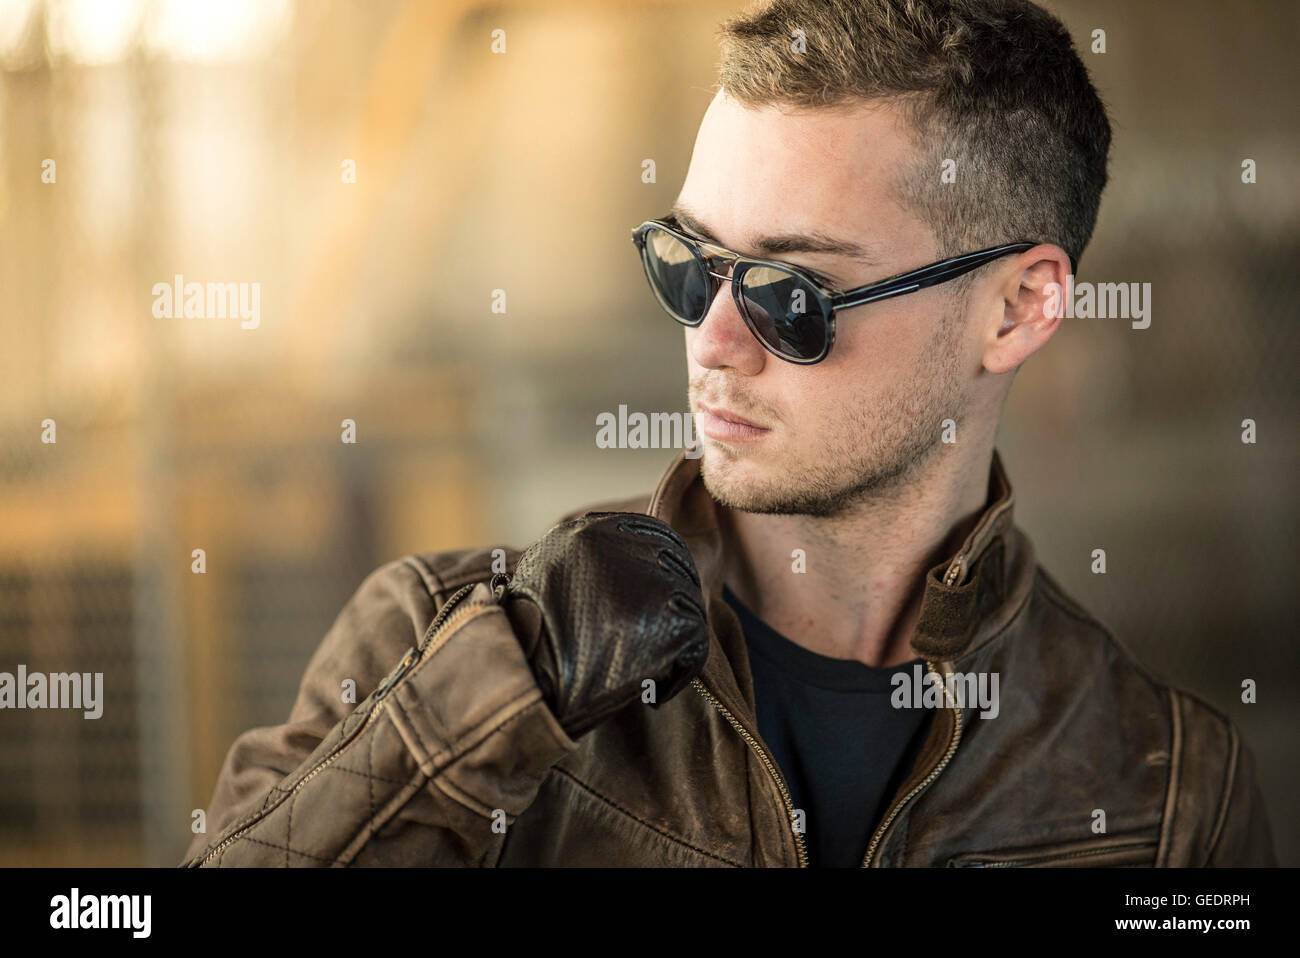 Retrato de un hombre adulto joven con gafas de sol y chaqueta de cuero Foto de stock